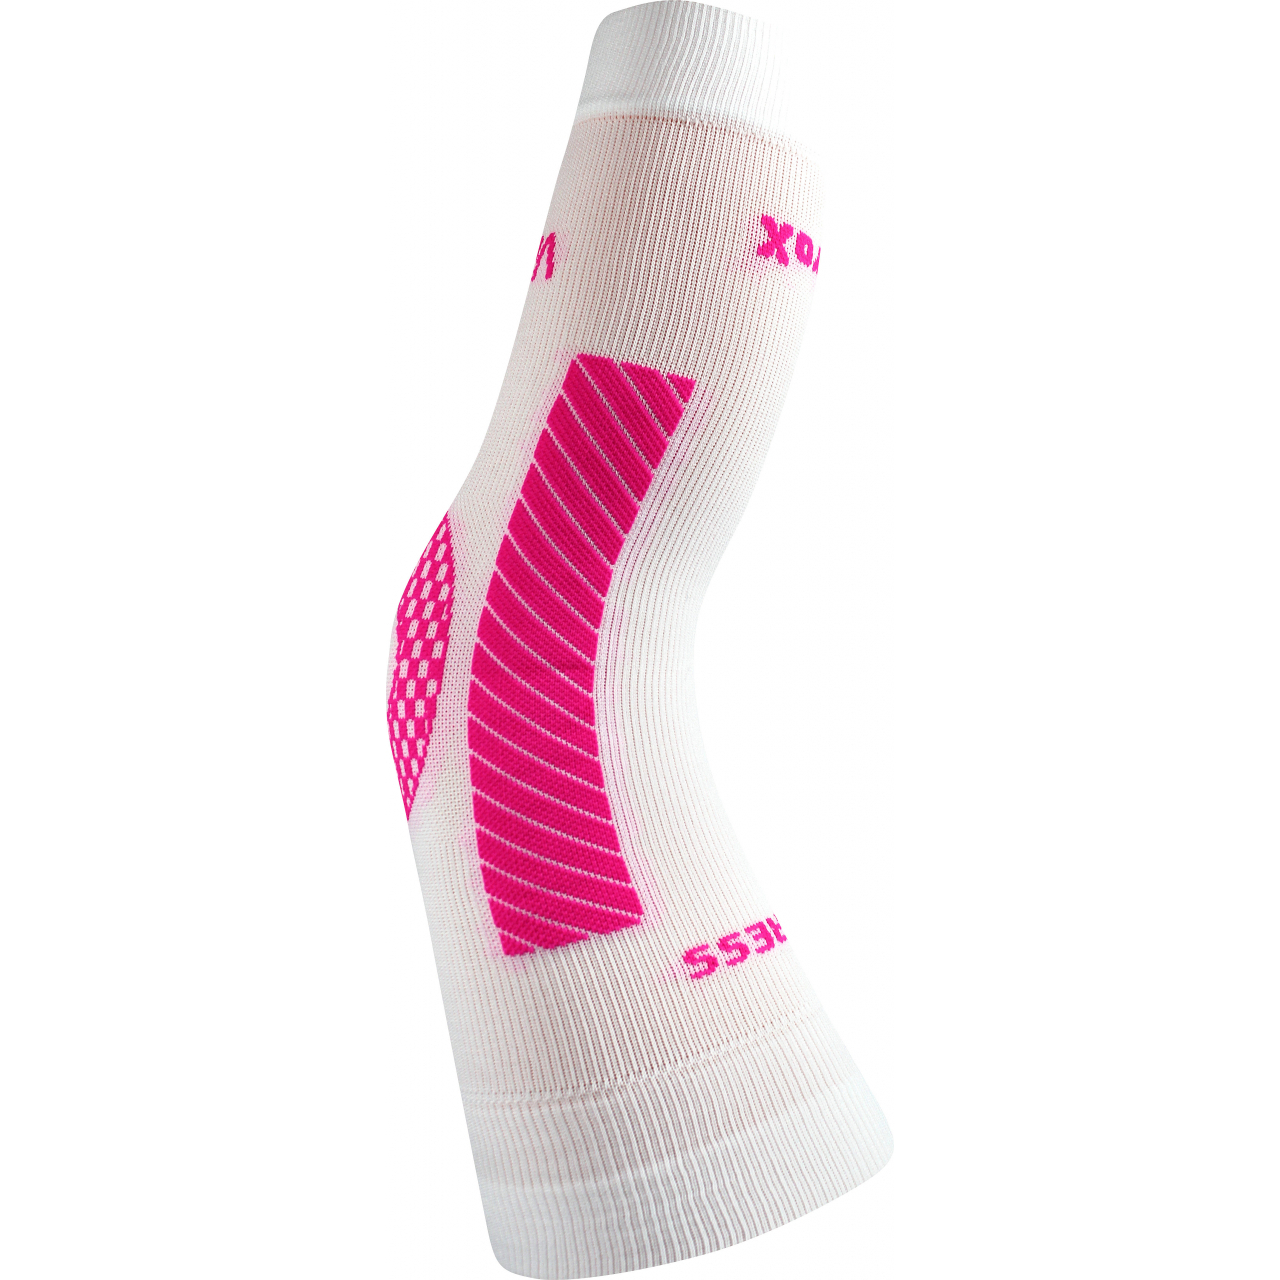 Návlek kompresní Voxx Protect koleno - bílý-růžový, L/XL